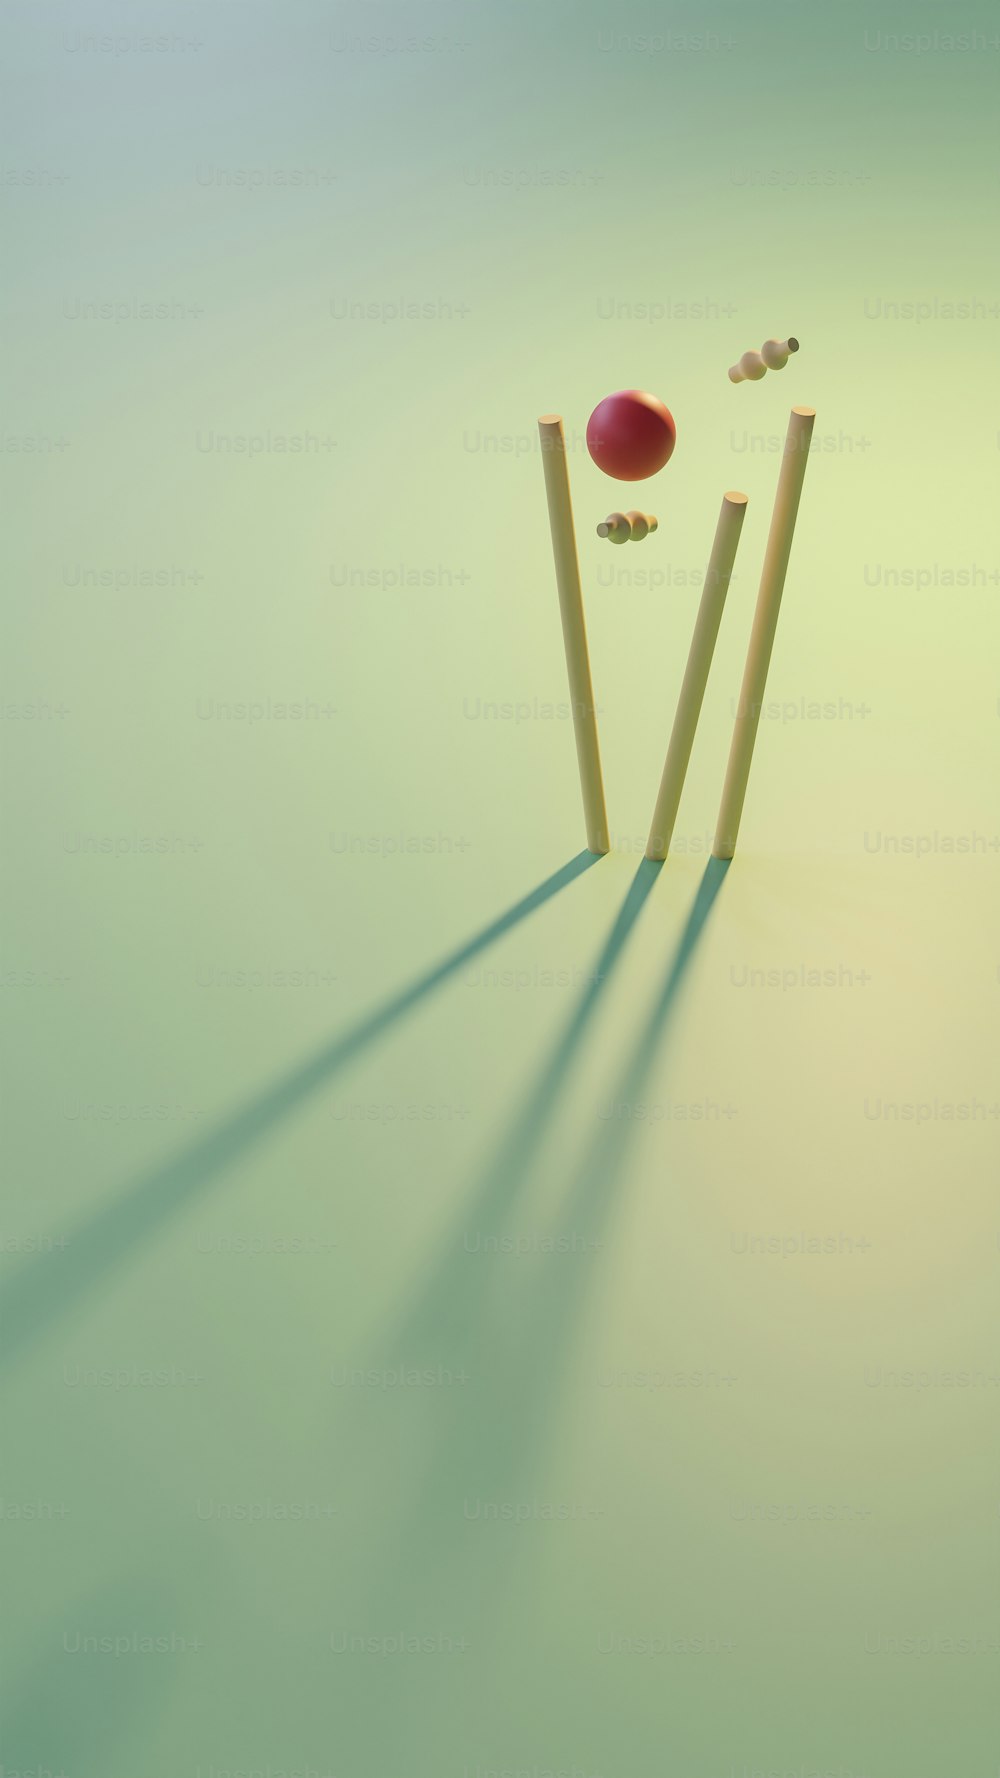 a cricket ball hitting a pair of wooden sticks